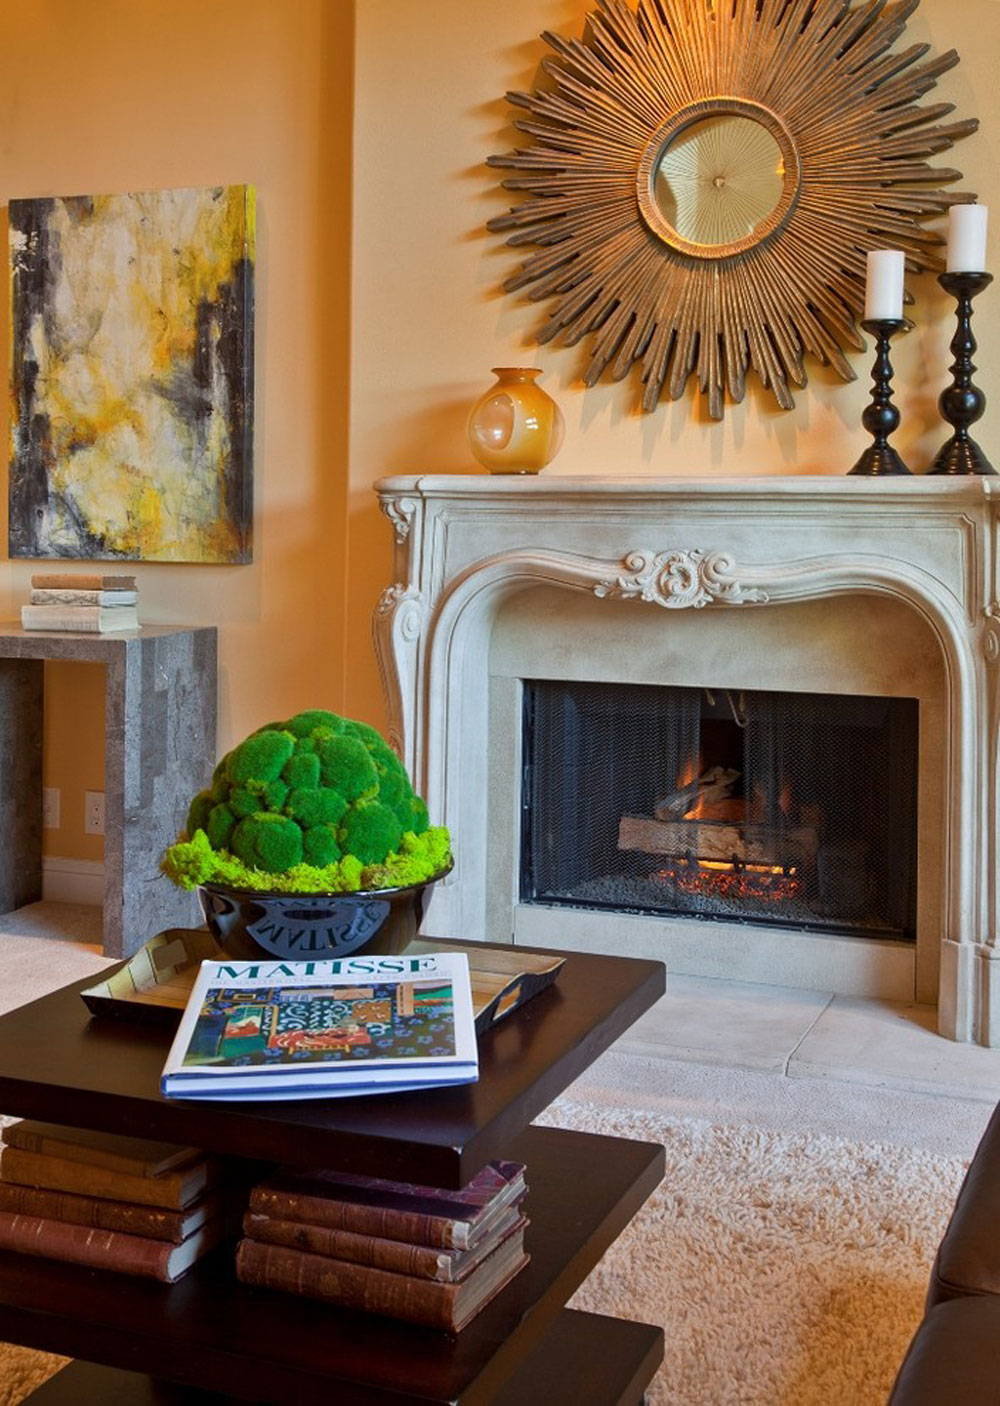 Meydenbauer-Residence-by-Andrea-Braund-Home-Staging-Design ved hjælp af ferskenfarven til at dekorere fantastiske interiører